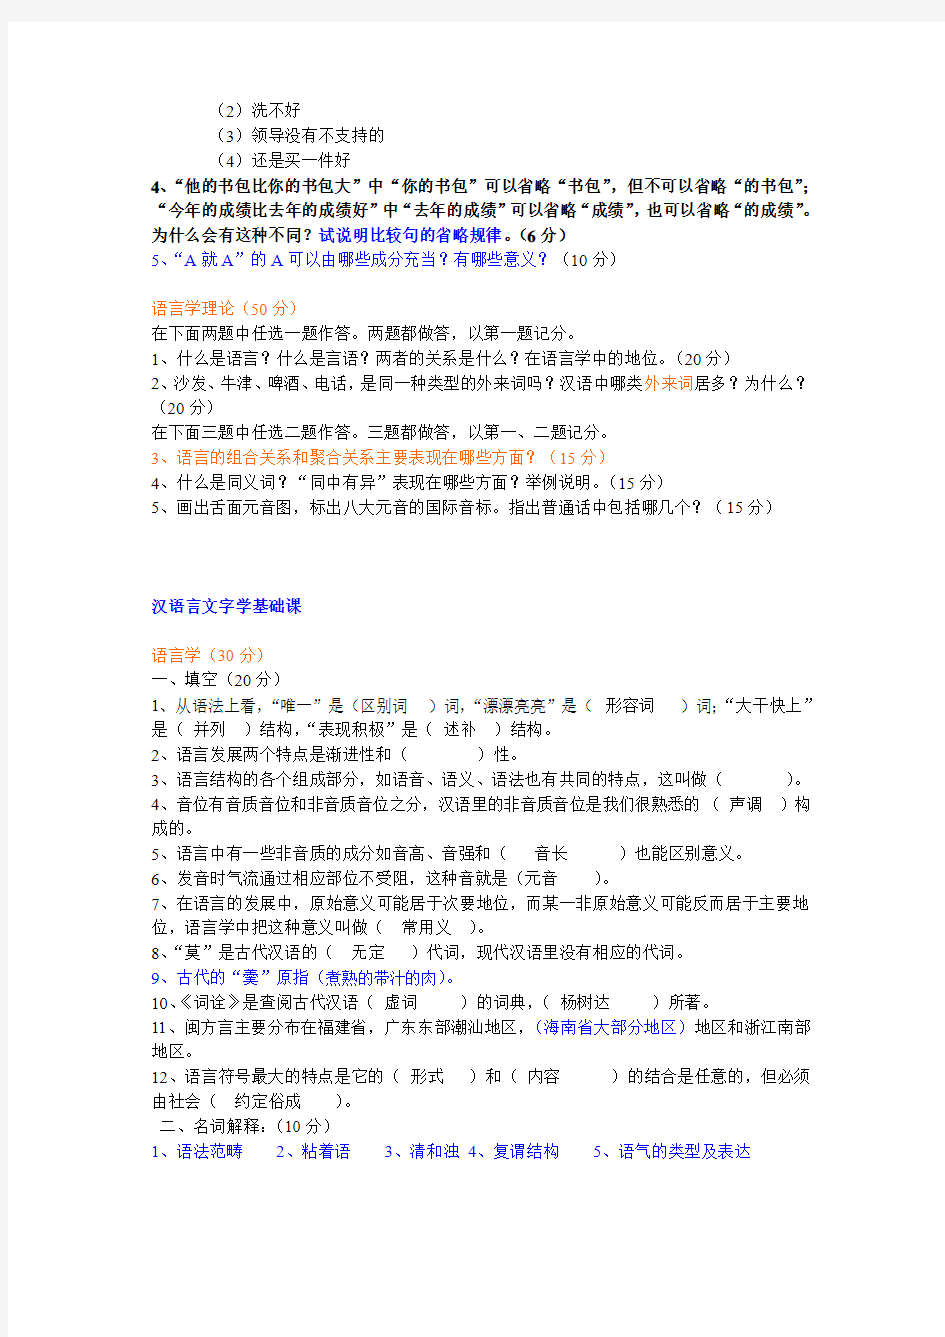 2007年北京大学对外汉语教育学院考研试题